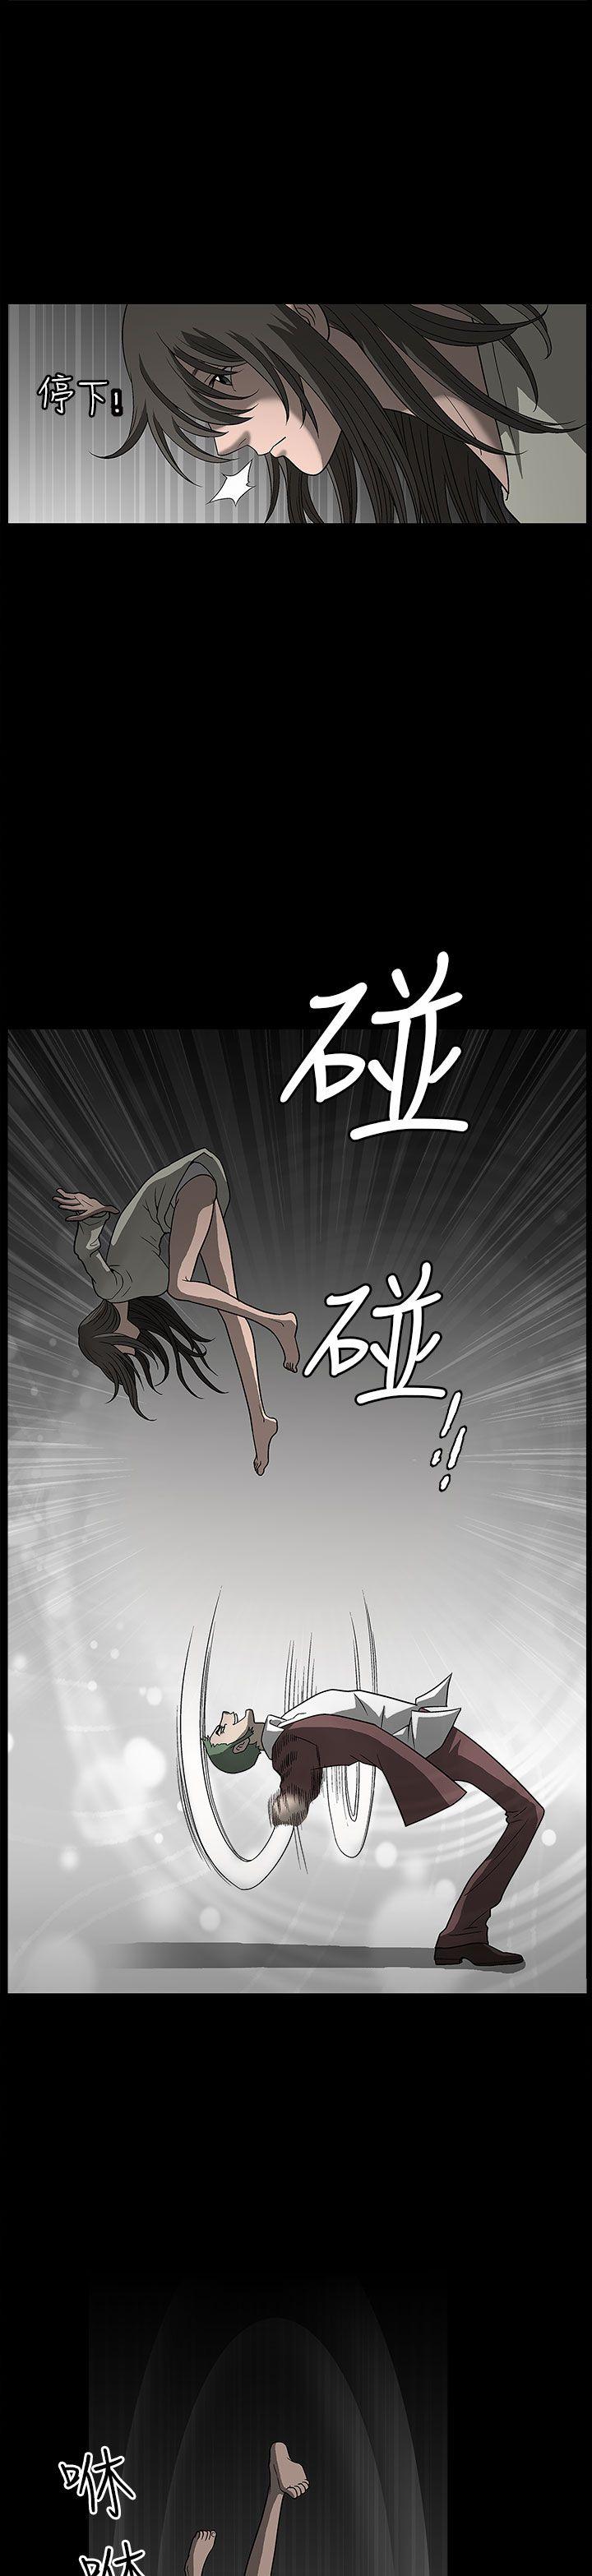 韩国污漫画 煦娜 第3话 13